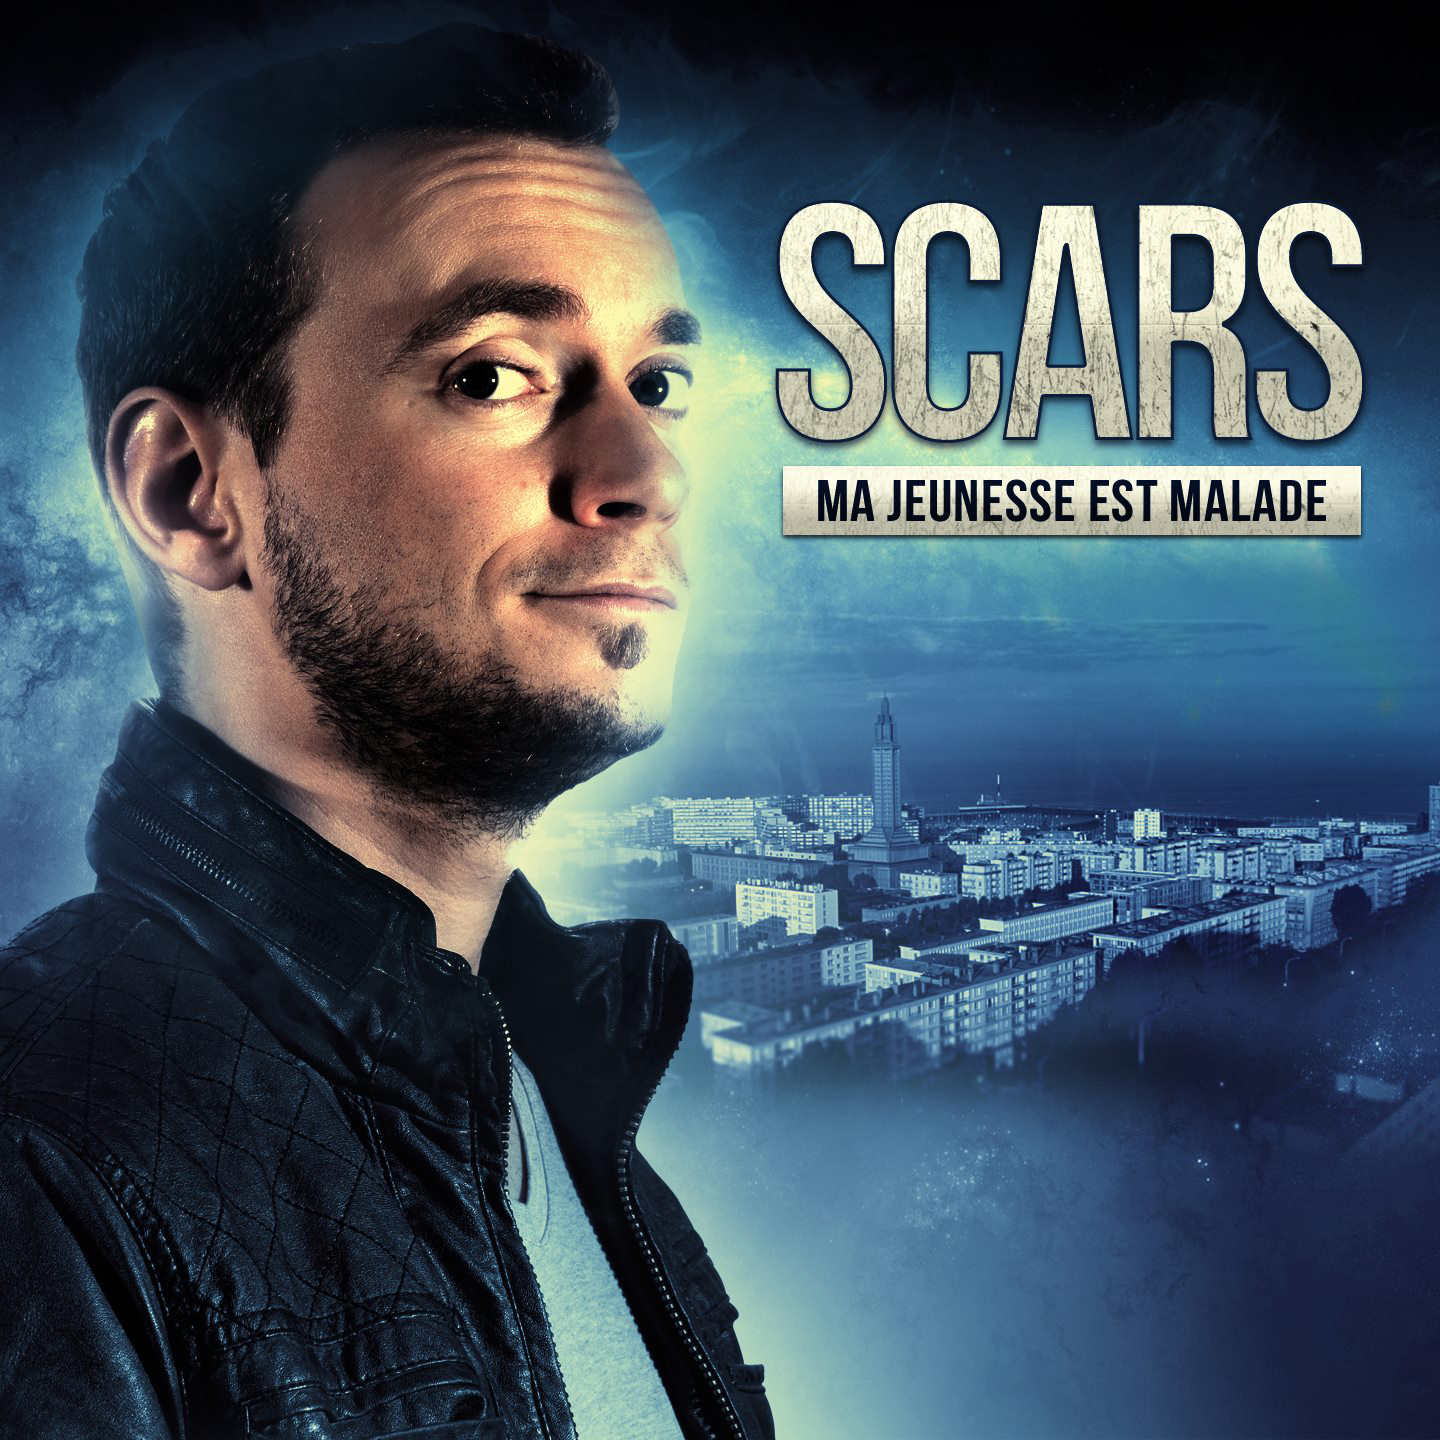 Cover de l'album de Scars - Ma jeunesse est malade. Réalisé par Loseou